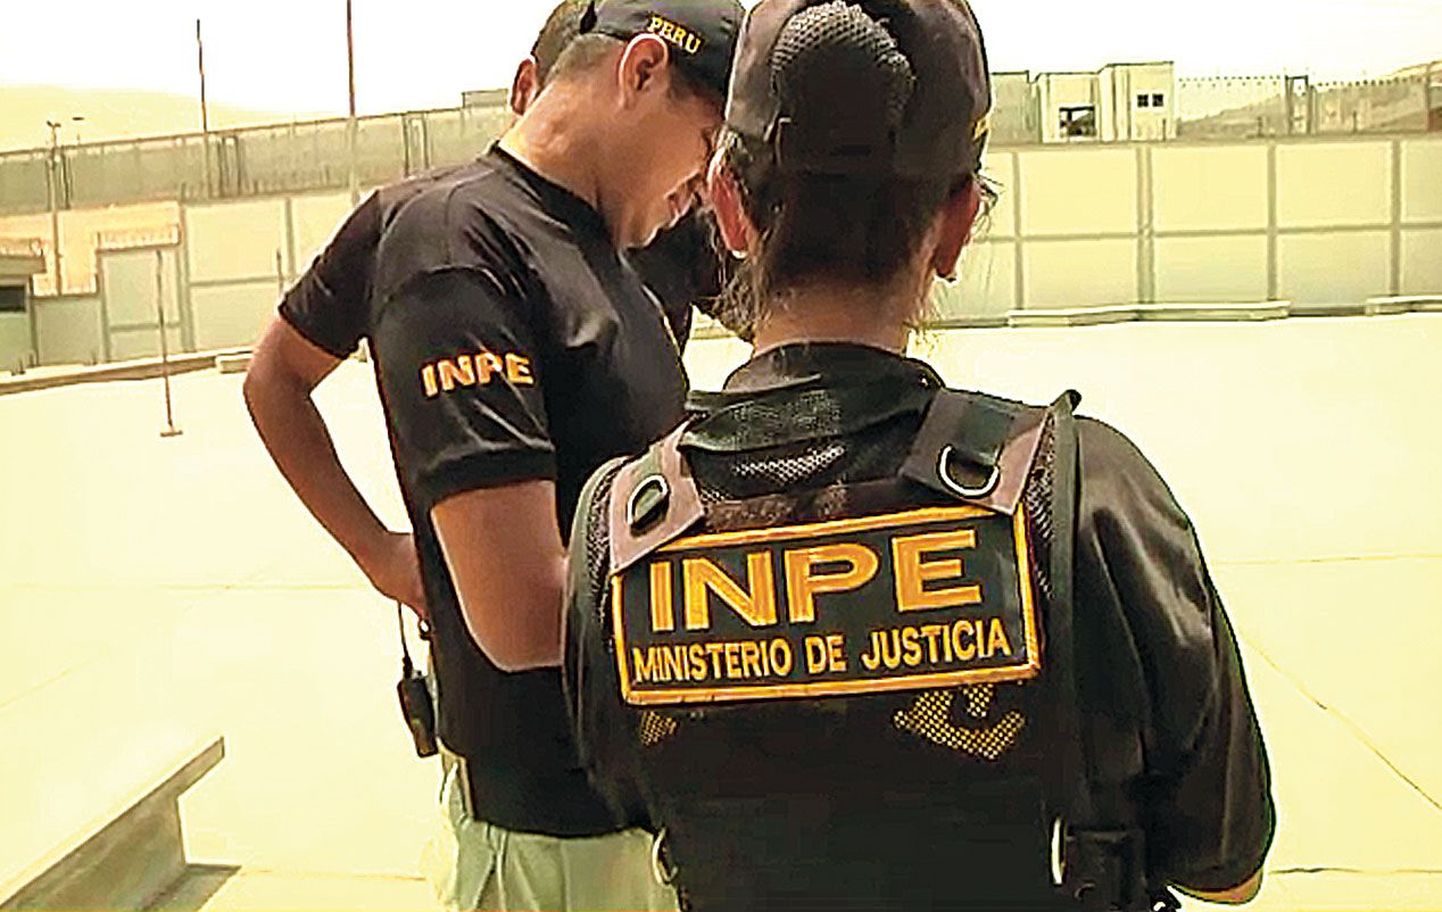 Peruu vanglas tuleb iga asja eest maksta – ka  näiteks perefoto omamise eest.